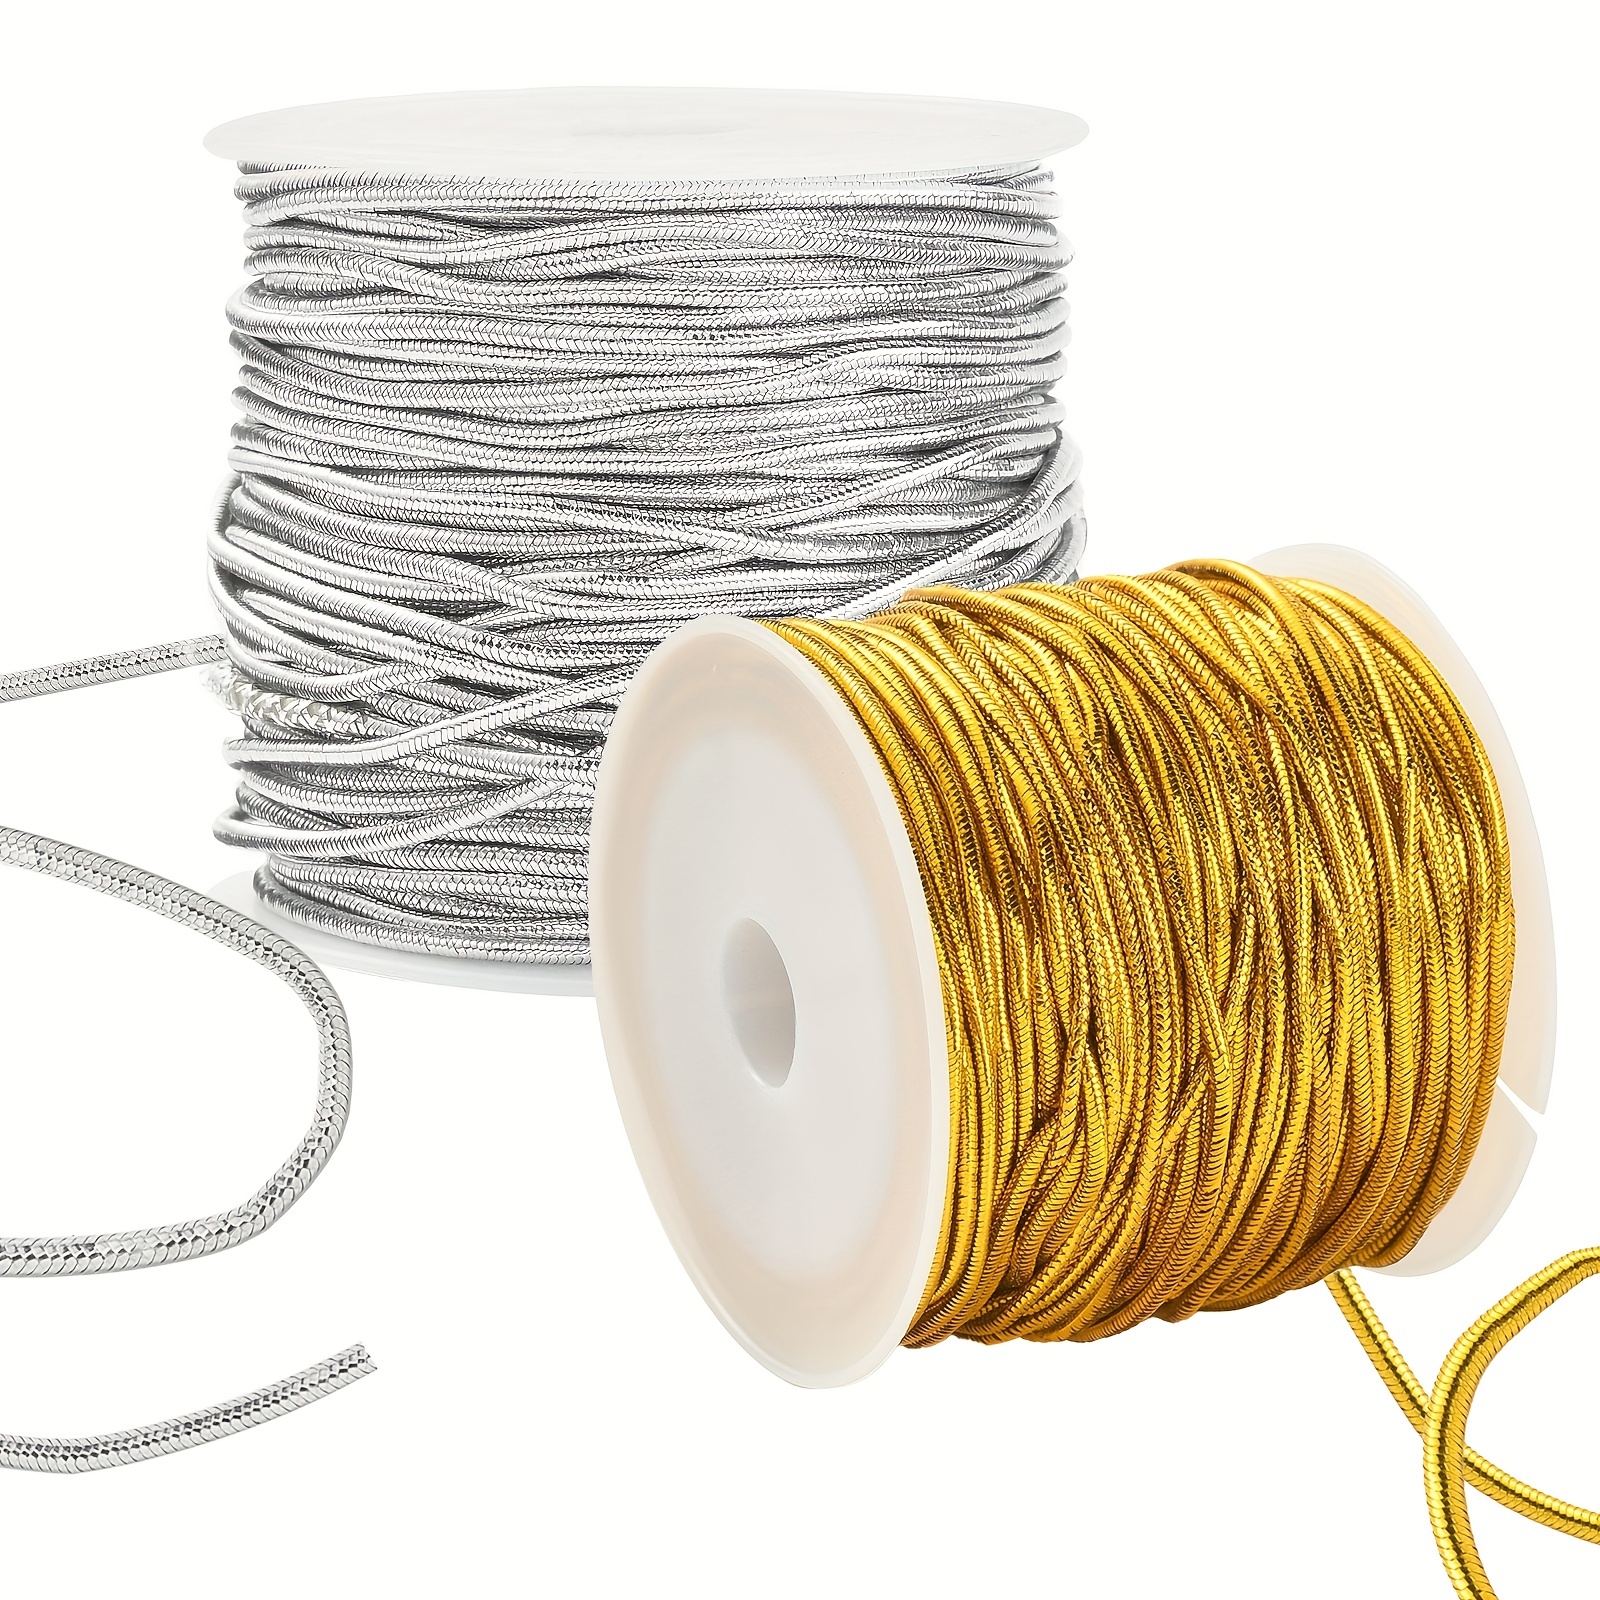 0,8/1/1.2/1.5mm redondo cordón elástico hilo elástico para diy pulsera  collar joyería material costura accesorios suministro